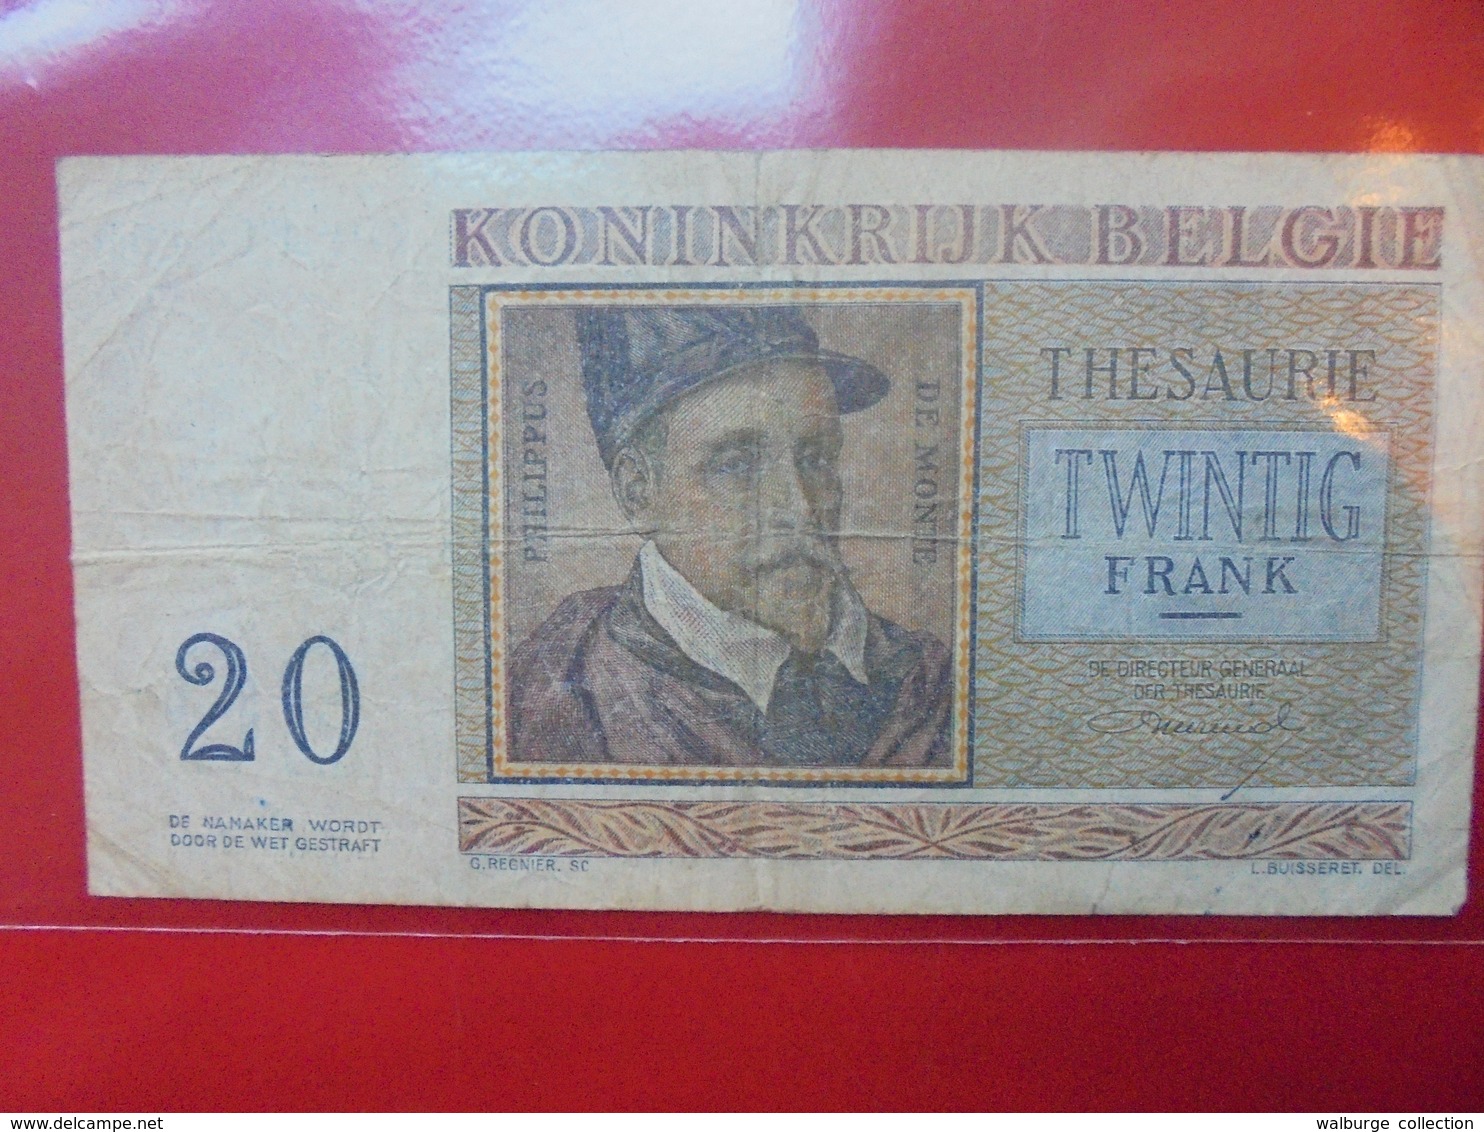 BELGIQUE 20 FRANCS 1956 CIRCULER - 20 Francs